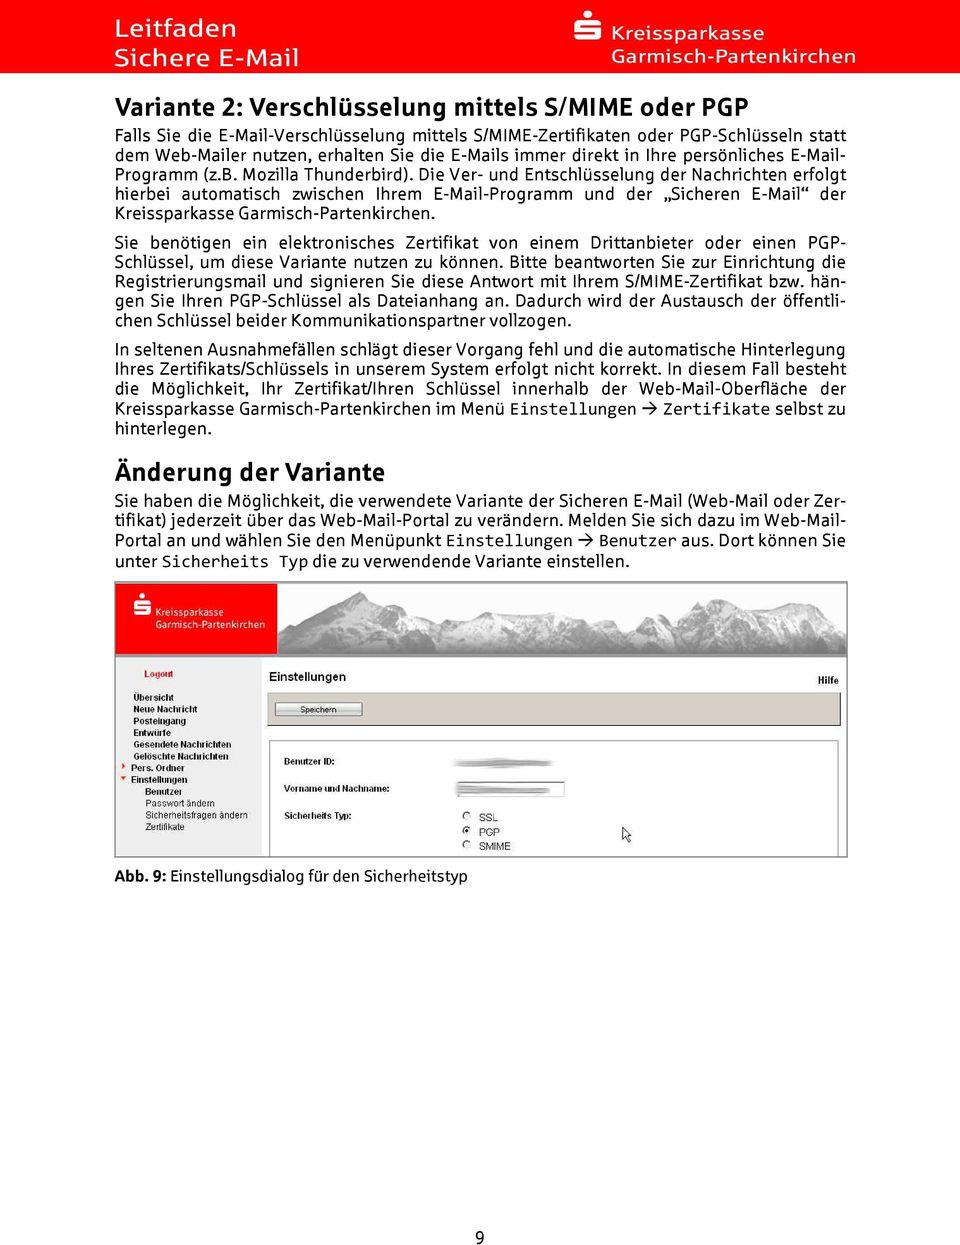 Die Ver- und Entschlüsselung der Nachrichten erfolgt hierbei automatisch zwischen Ihrem E-Mail-Programm und der Sicheren E-Mail der Kreissparkasse Garmisch-Partenkirchen.